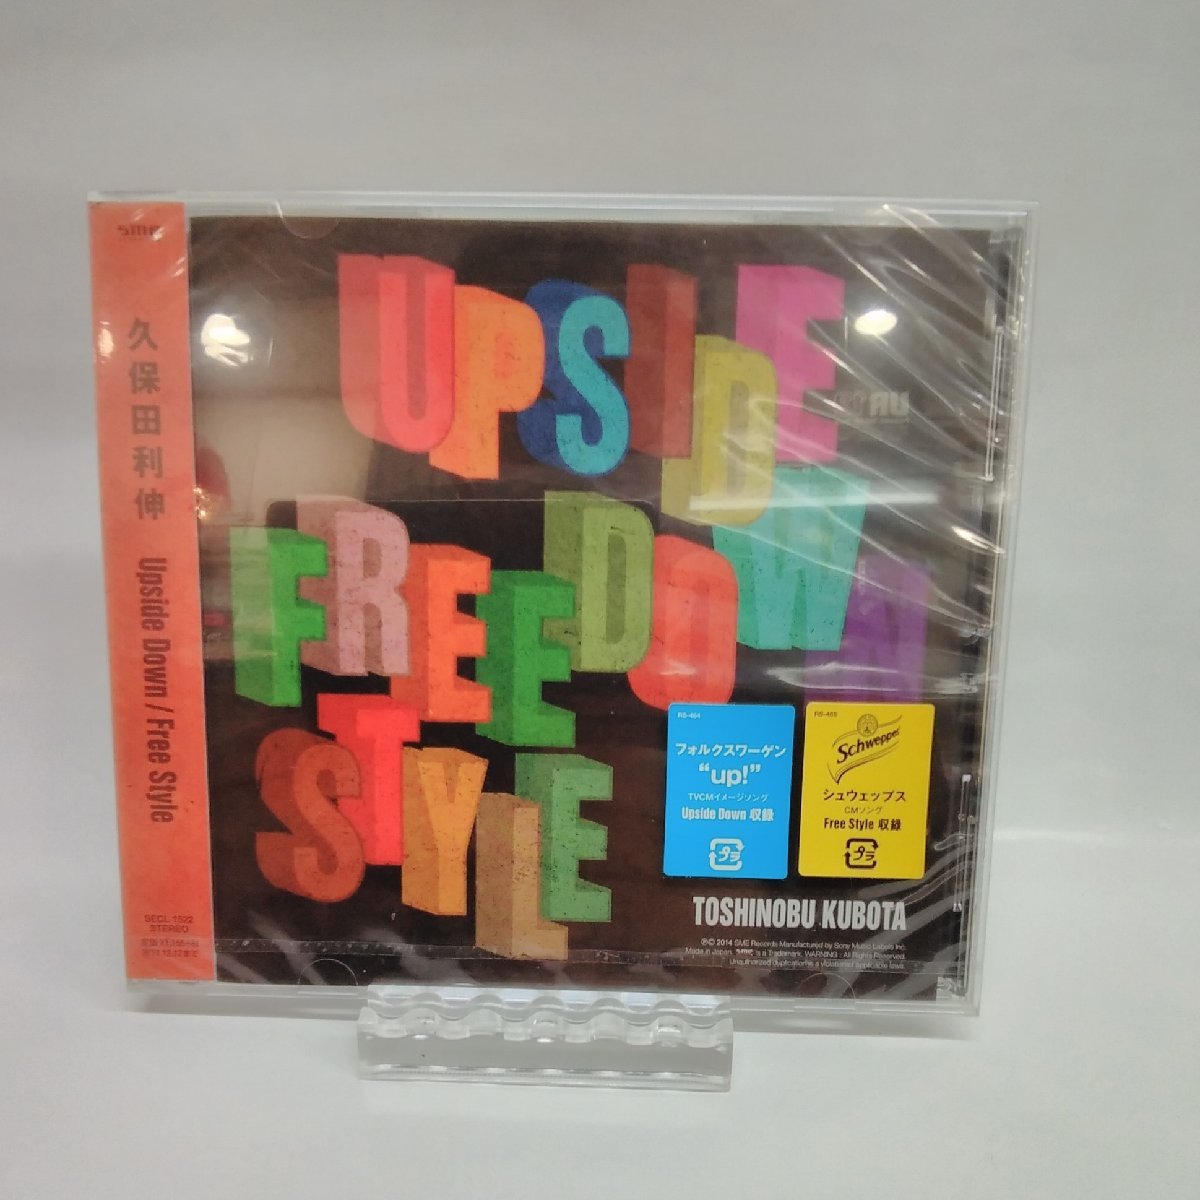 【新品・超特価90%OFF!】久保田利伸・Upside Down/Free Style・SEC-L1522・CD・DVD・処分超特価!!_画像1